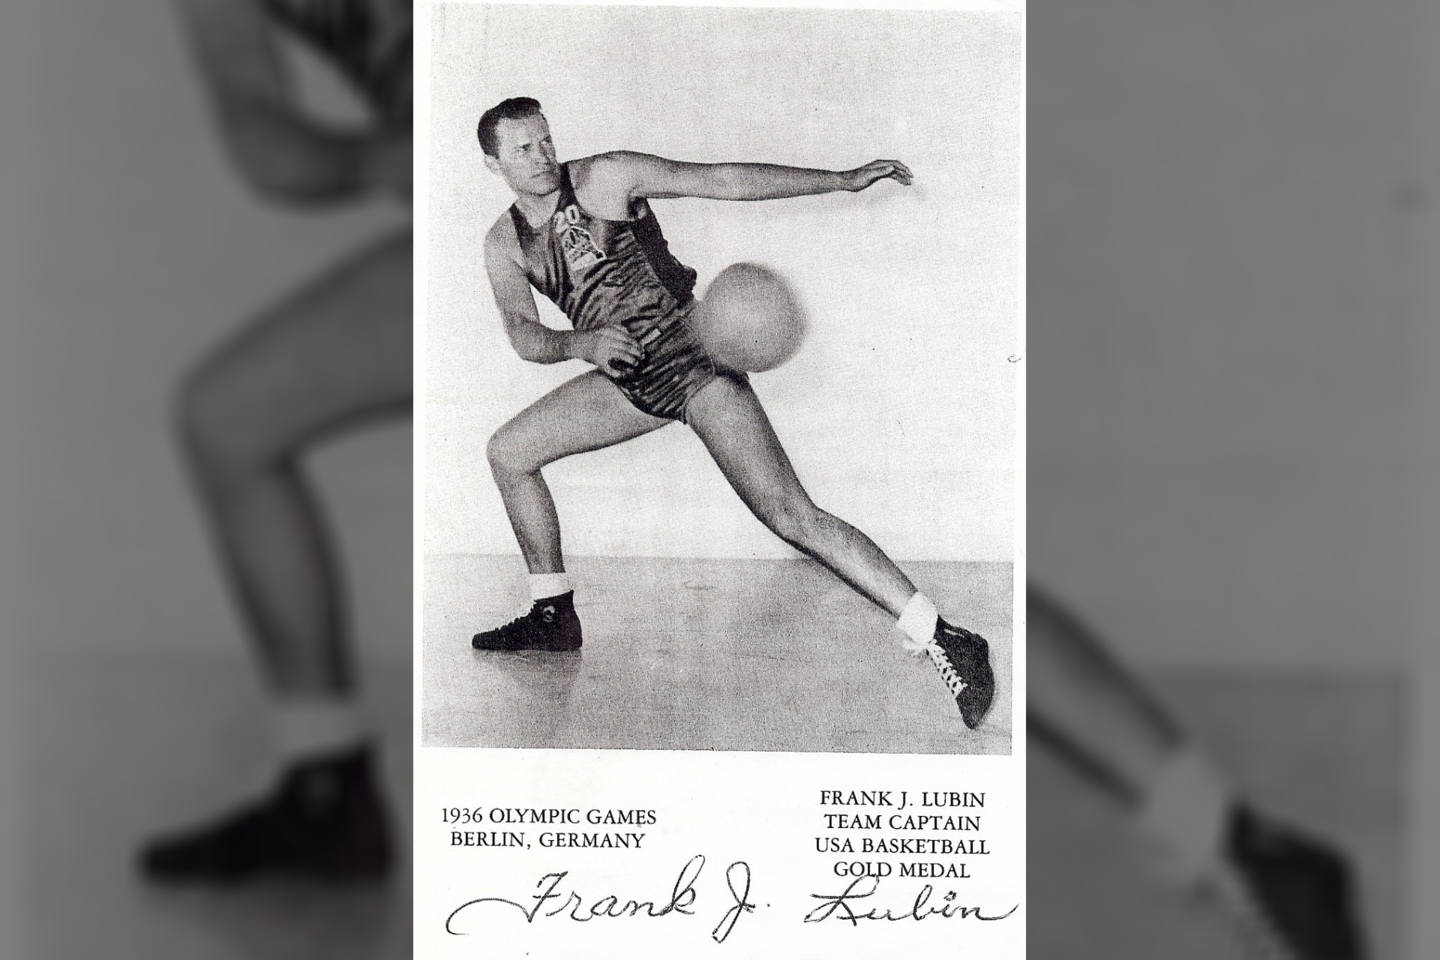 1910 m. gimė JAV ir lietuvių krepšininkas Pranas Lubinas. Mirė 1999 m.